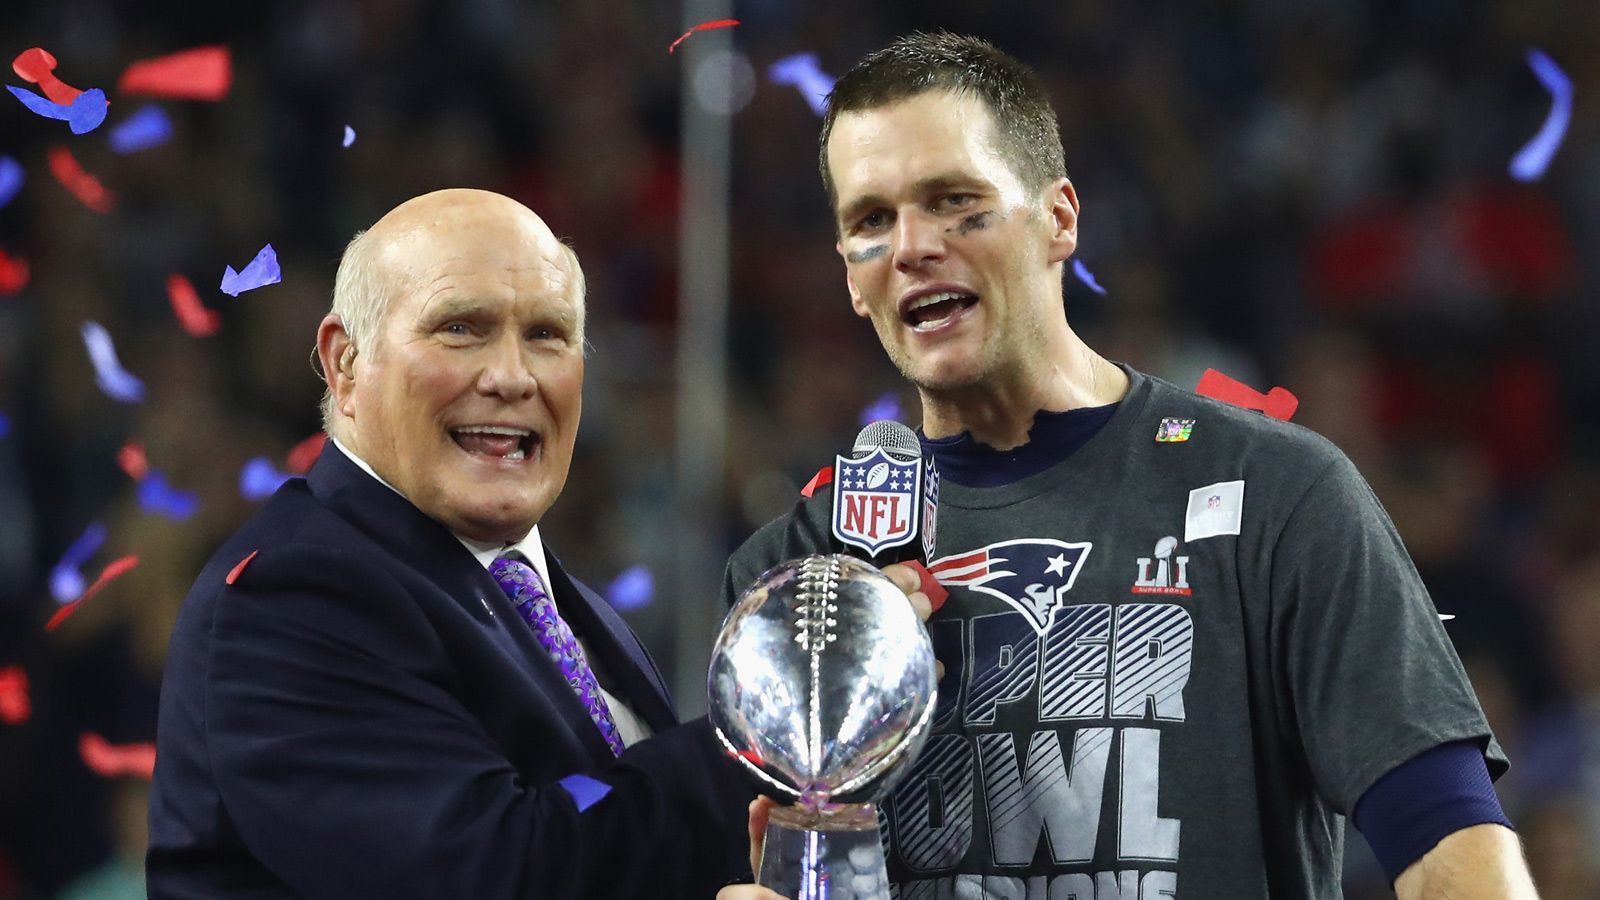 <strong>New England Patriots: sechs Siege</strong><br>
                Die New England Patriots sind das erfolgreichste NFL-Team der 2000er Jahre. Mit Star-Quarterback Tom Brady (r.) gewann das Team aus Foxborough 2019 zum insgesamt sechsten Mal den Super Bowl.
